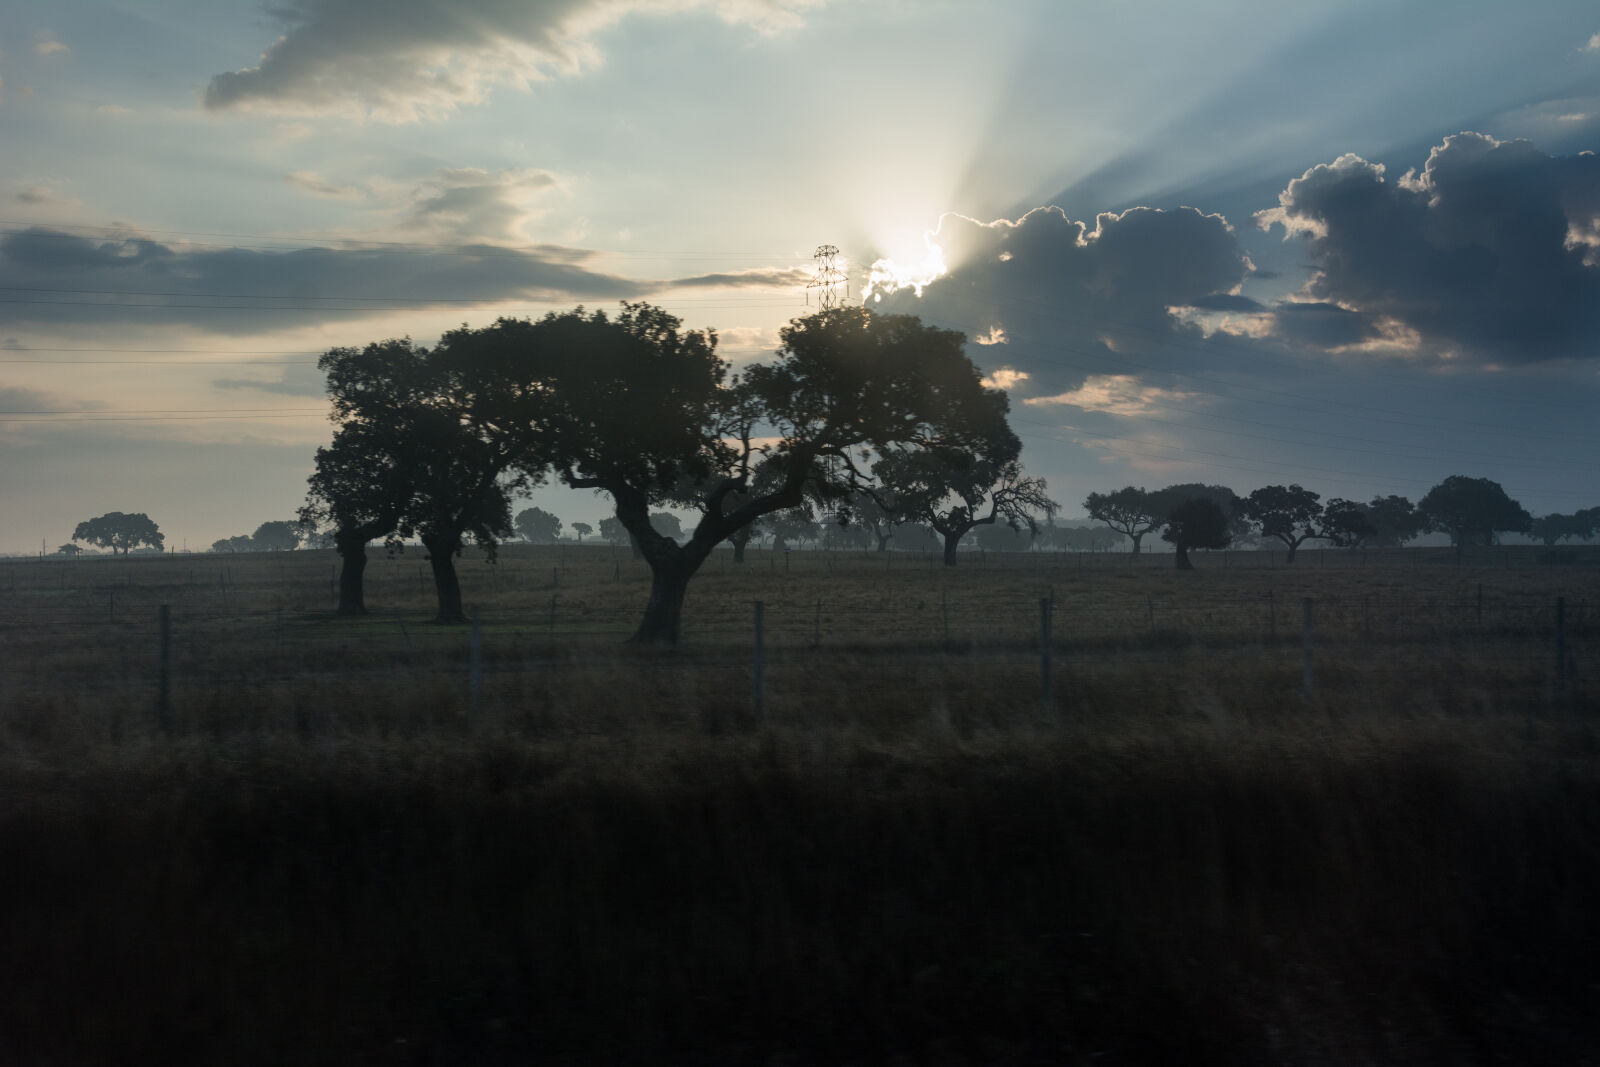 Nikon AF-S DX Nikkor 16-85mm F3.5-5.6G ED VR sample photo. Landscape, tree, morning, sun photography